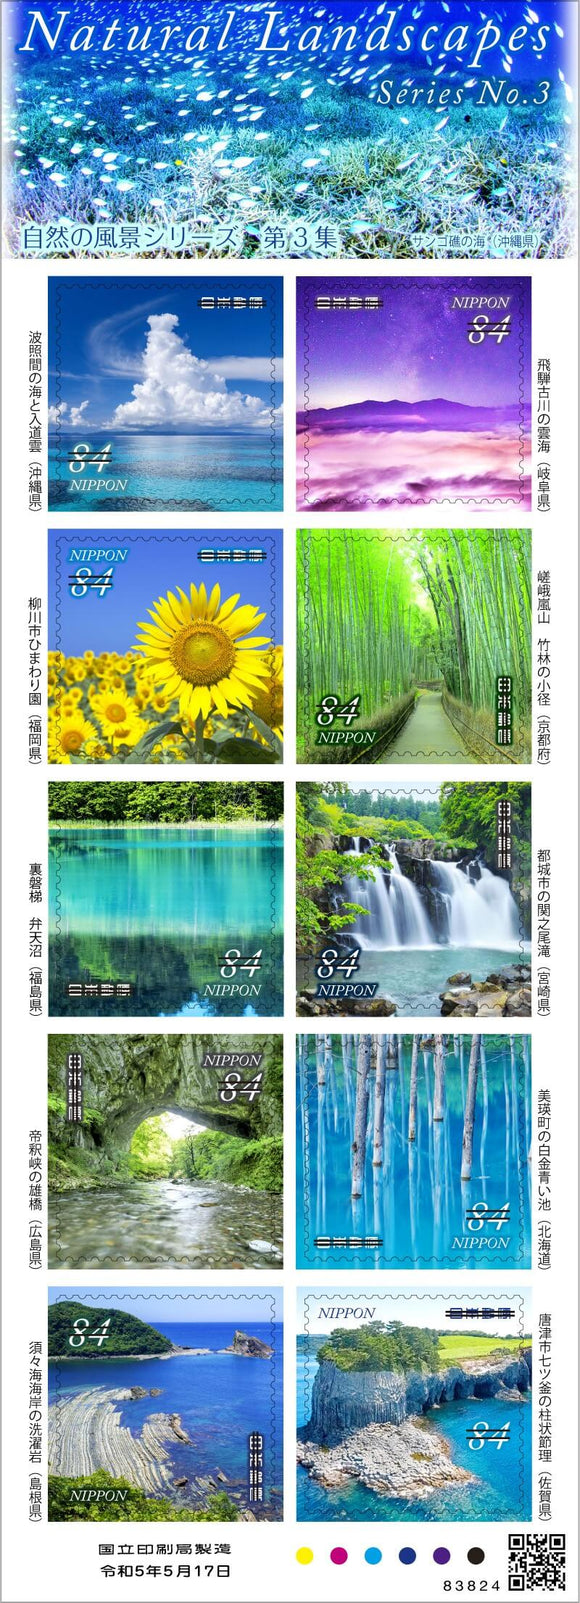 JP2023-14 Japan Natural Scenery Series No 3